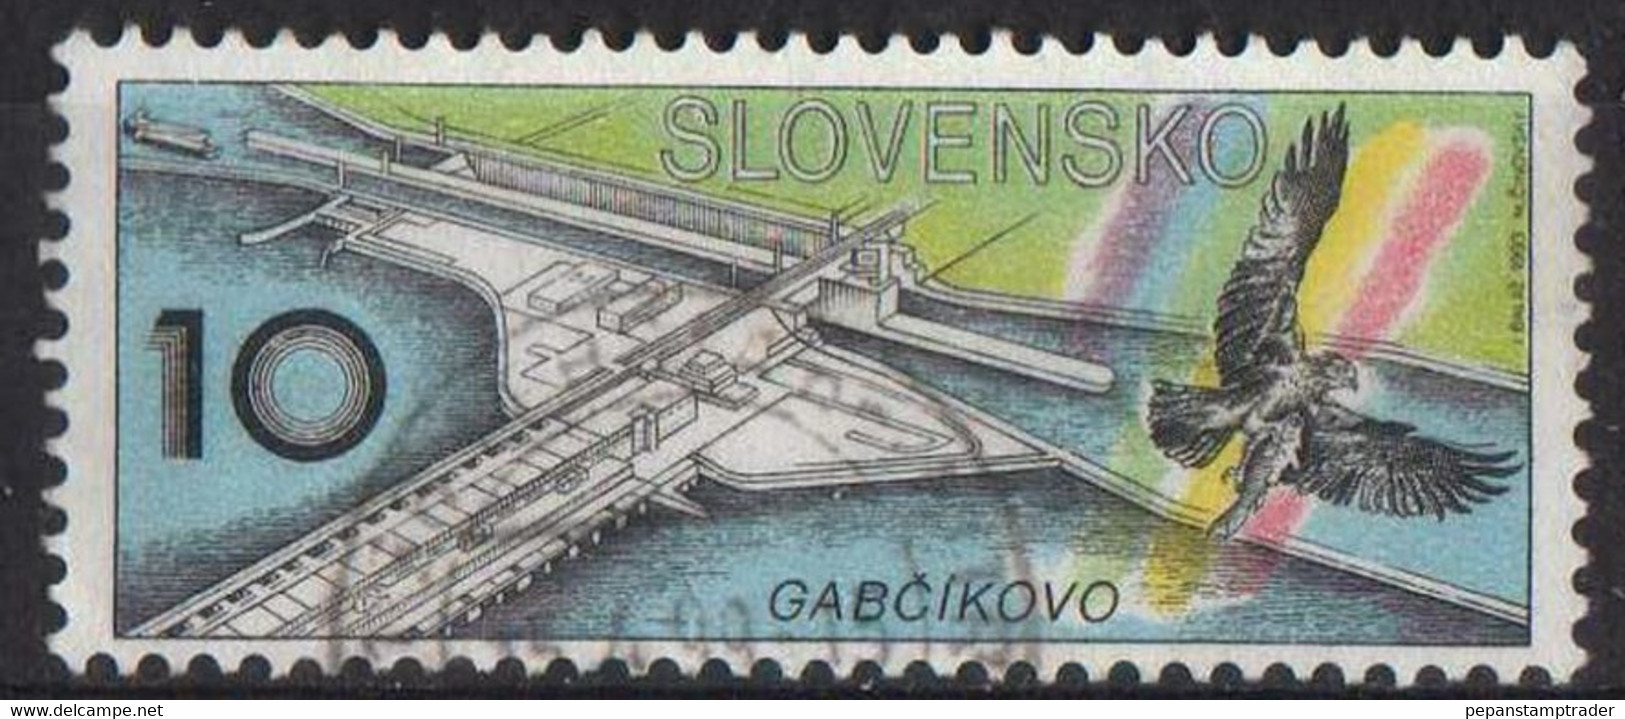 Slovakia - #172 - Used - Used Stamps